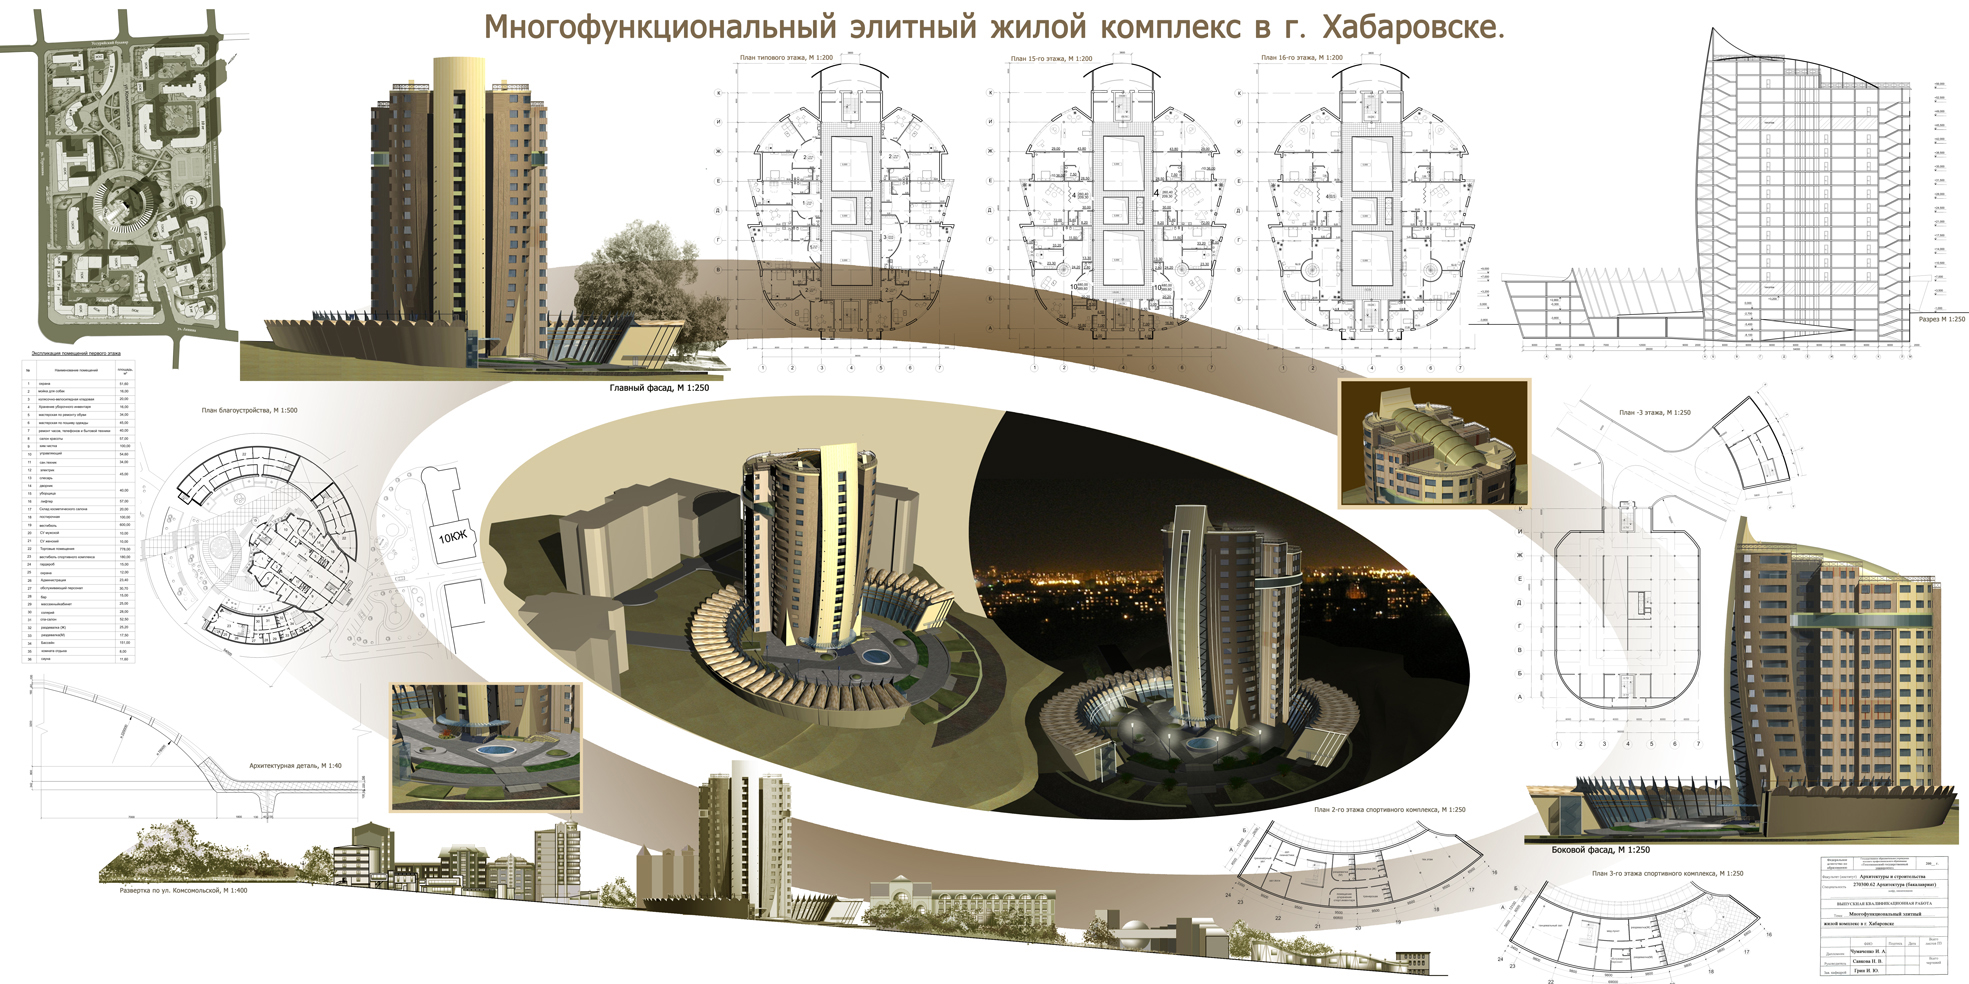 Многофункциональный жилой комплекс в г. Хабаровске